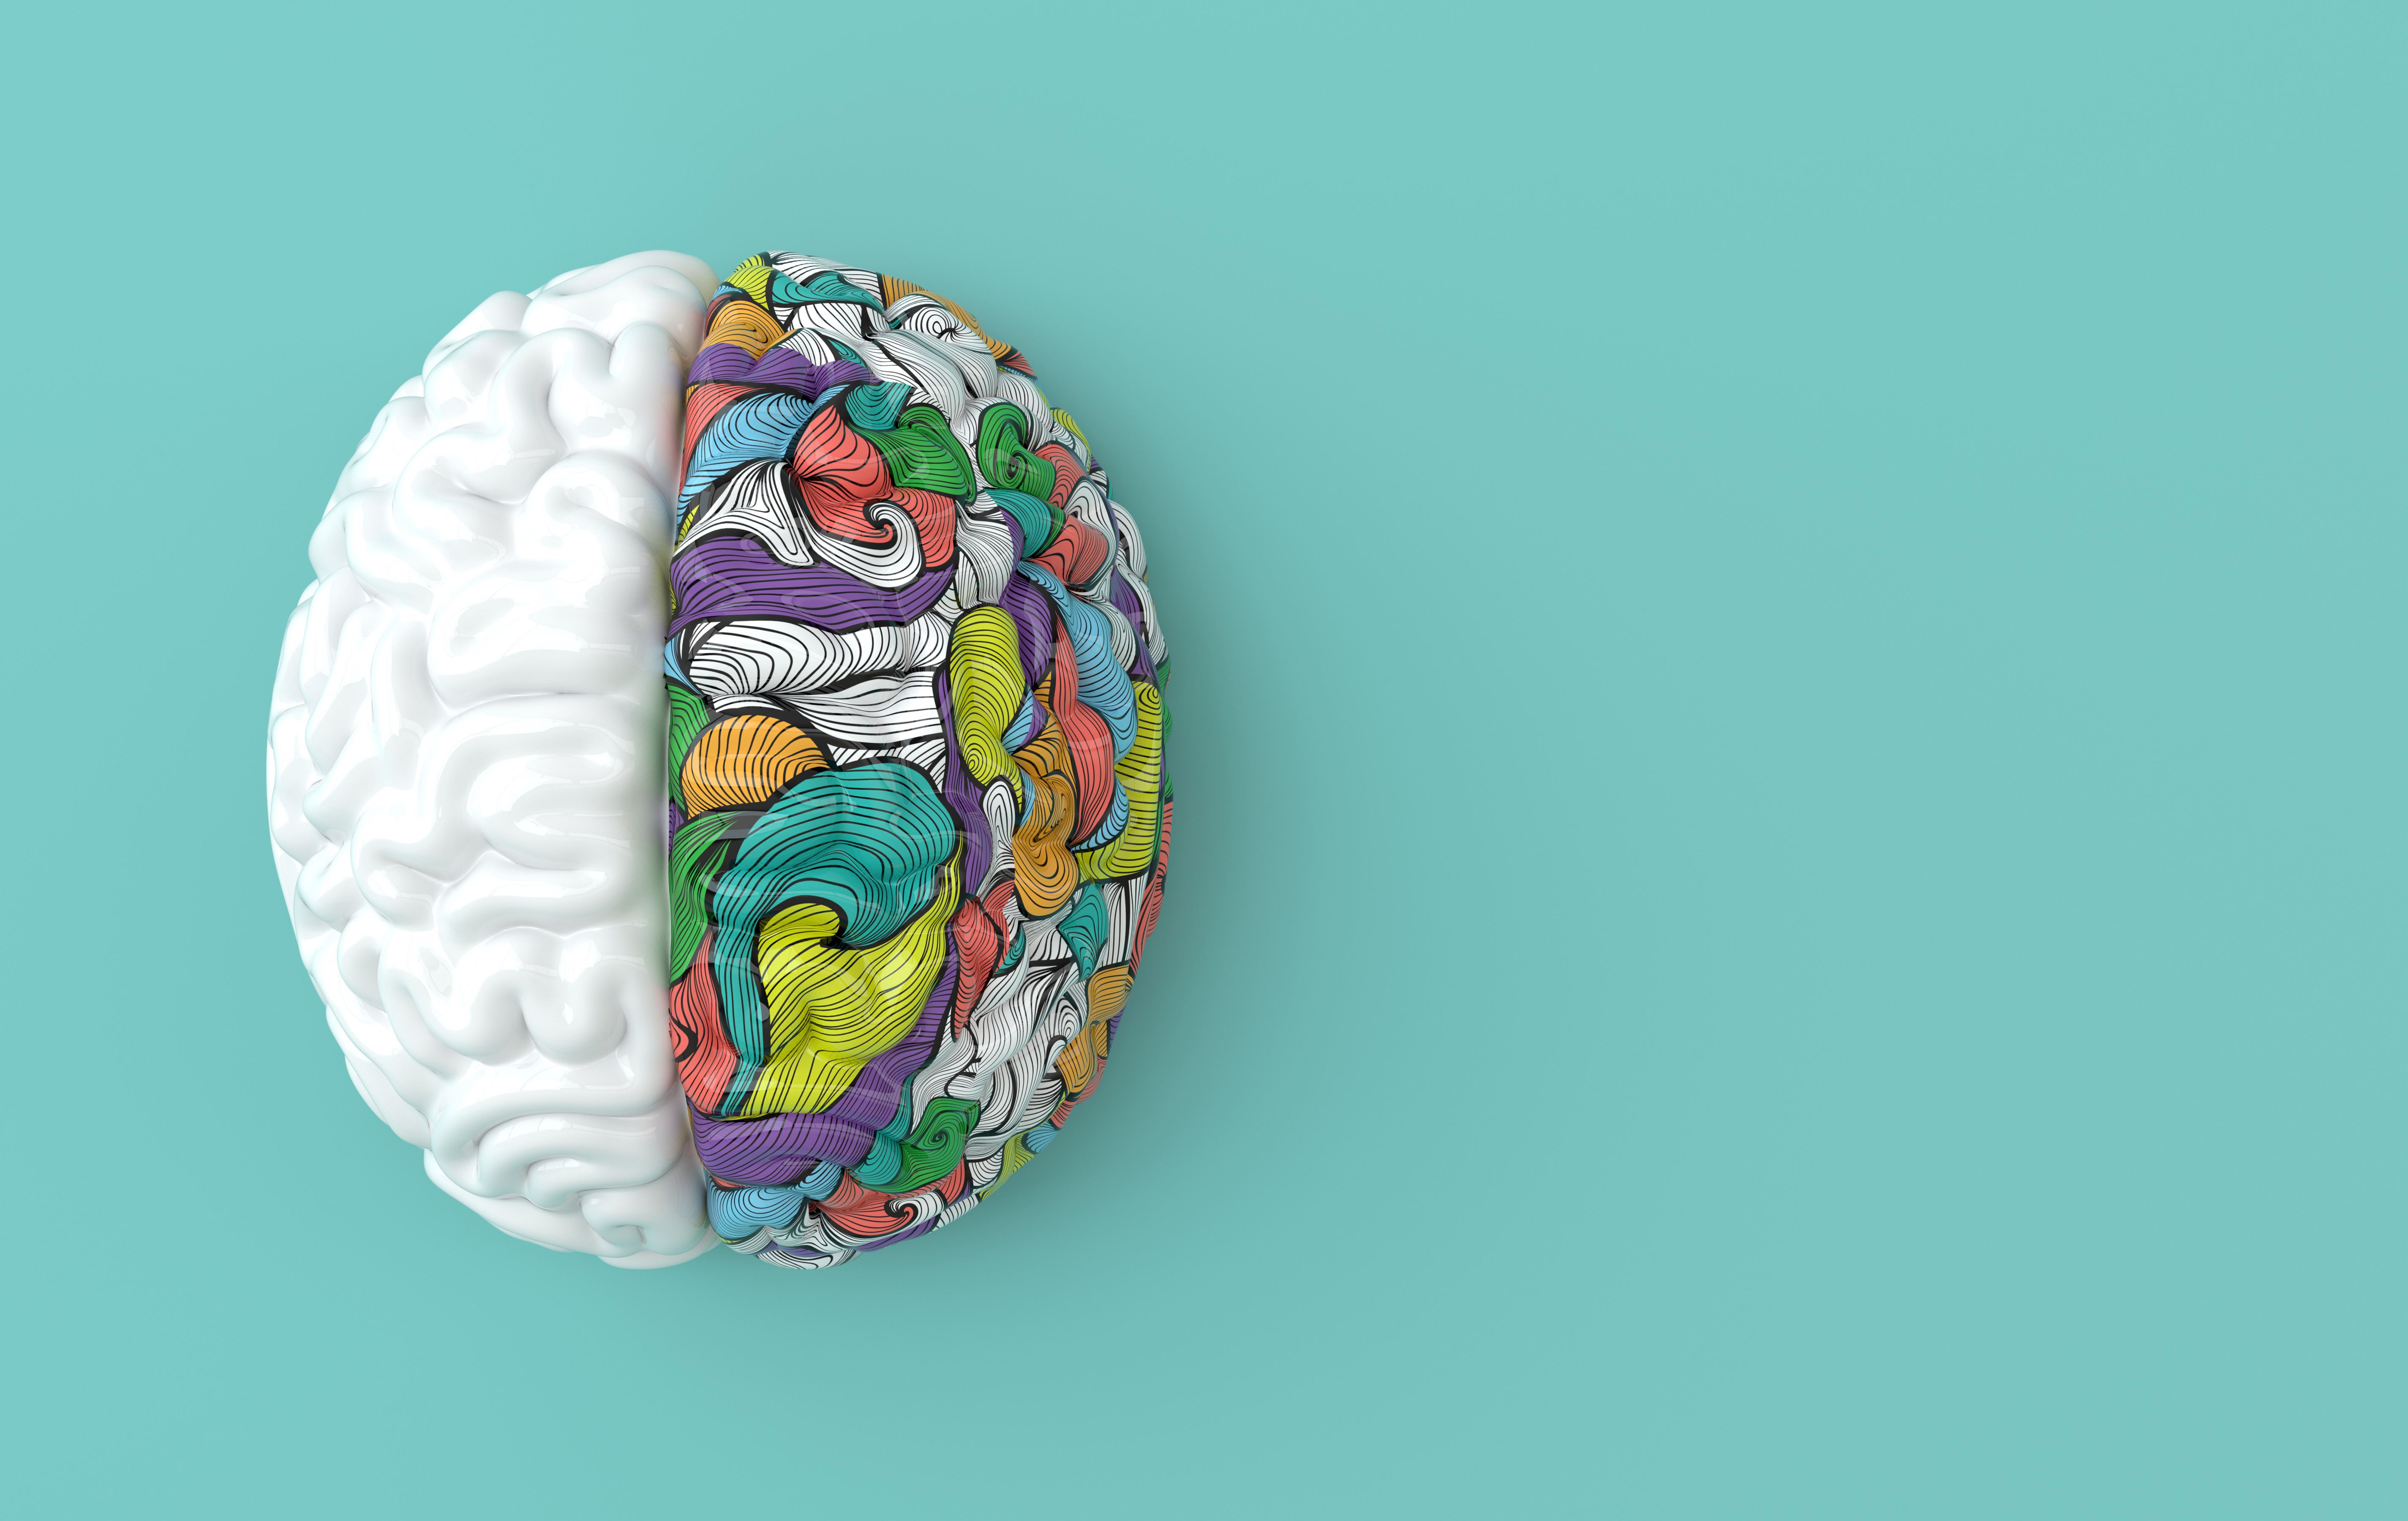 Een namaak van het menselijk brein, de linker heft in wit en de rechter helft is meerdere kleuren.